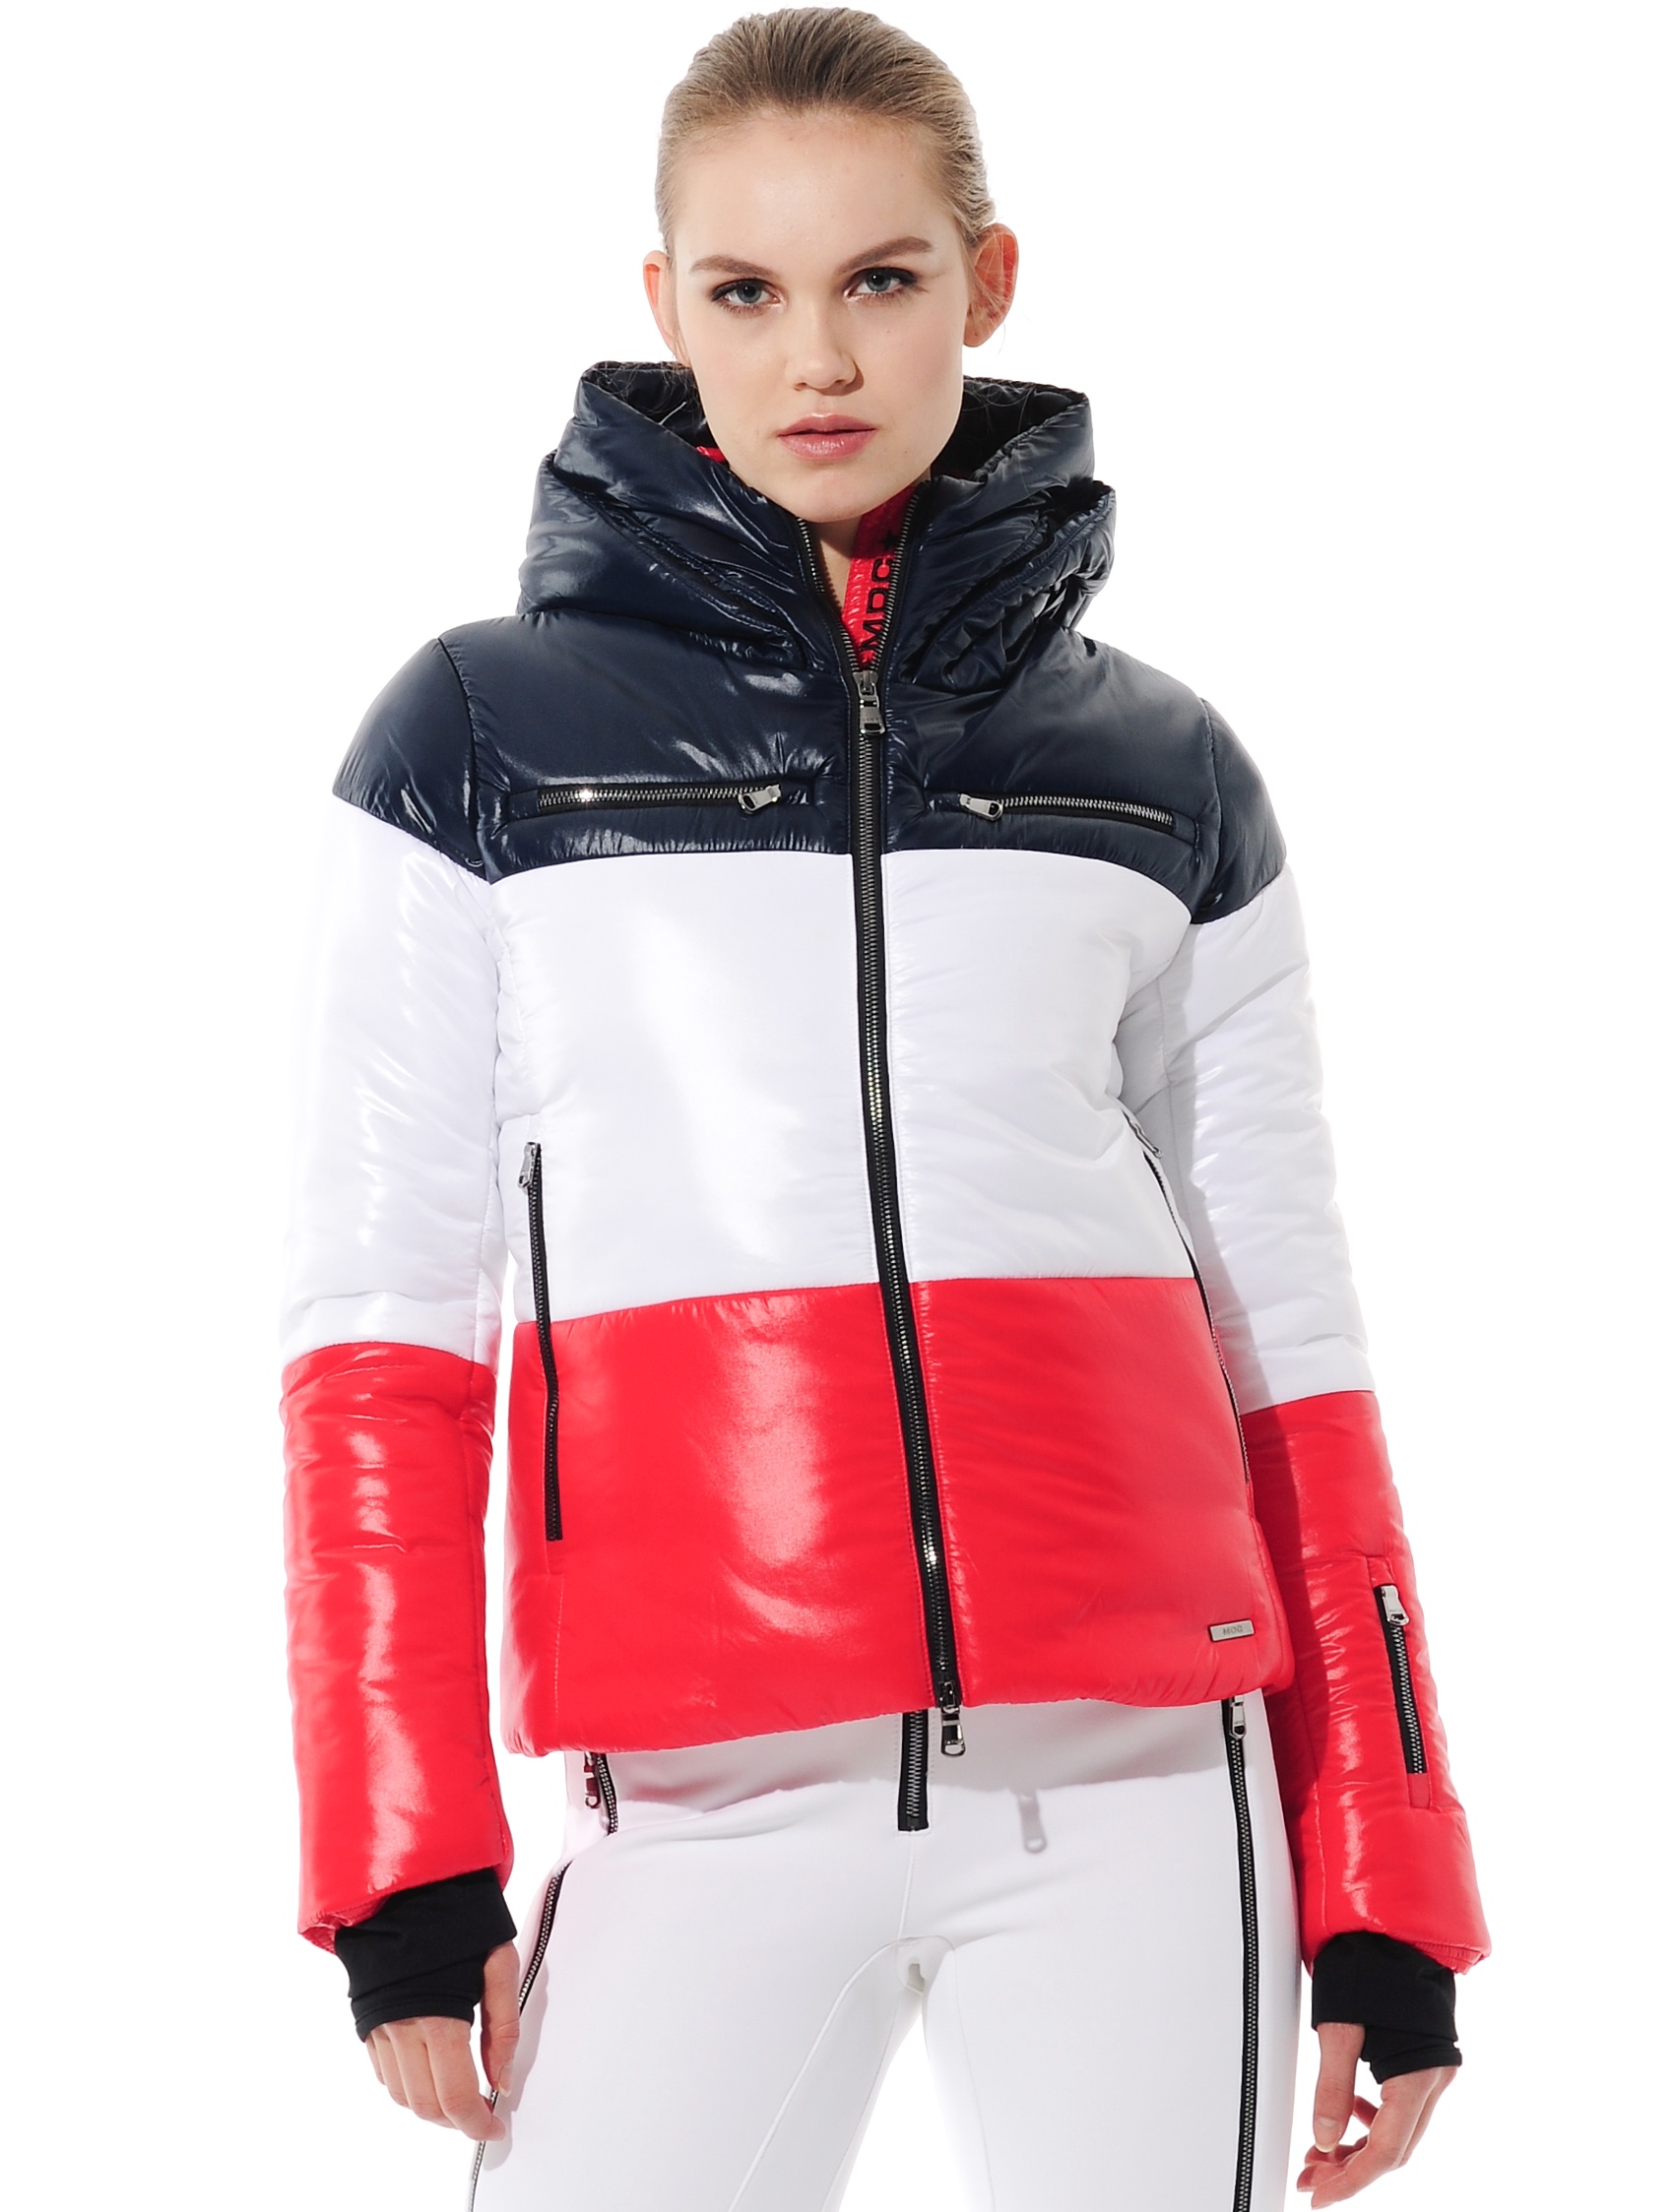 shiny ski jacket red/white/navy 